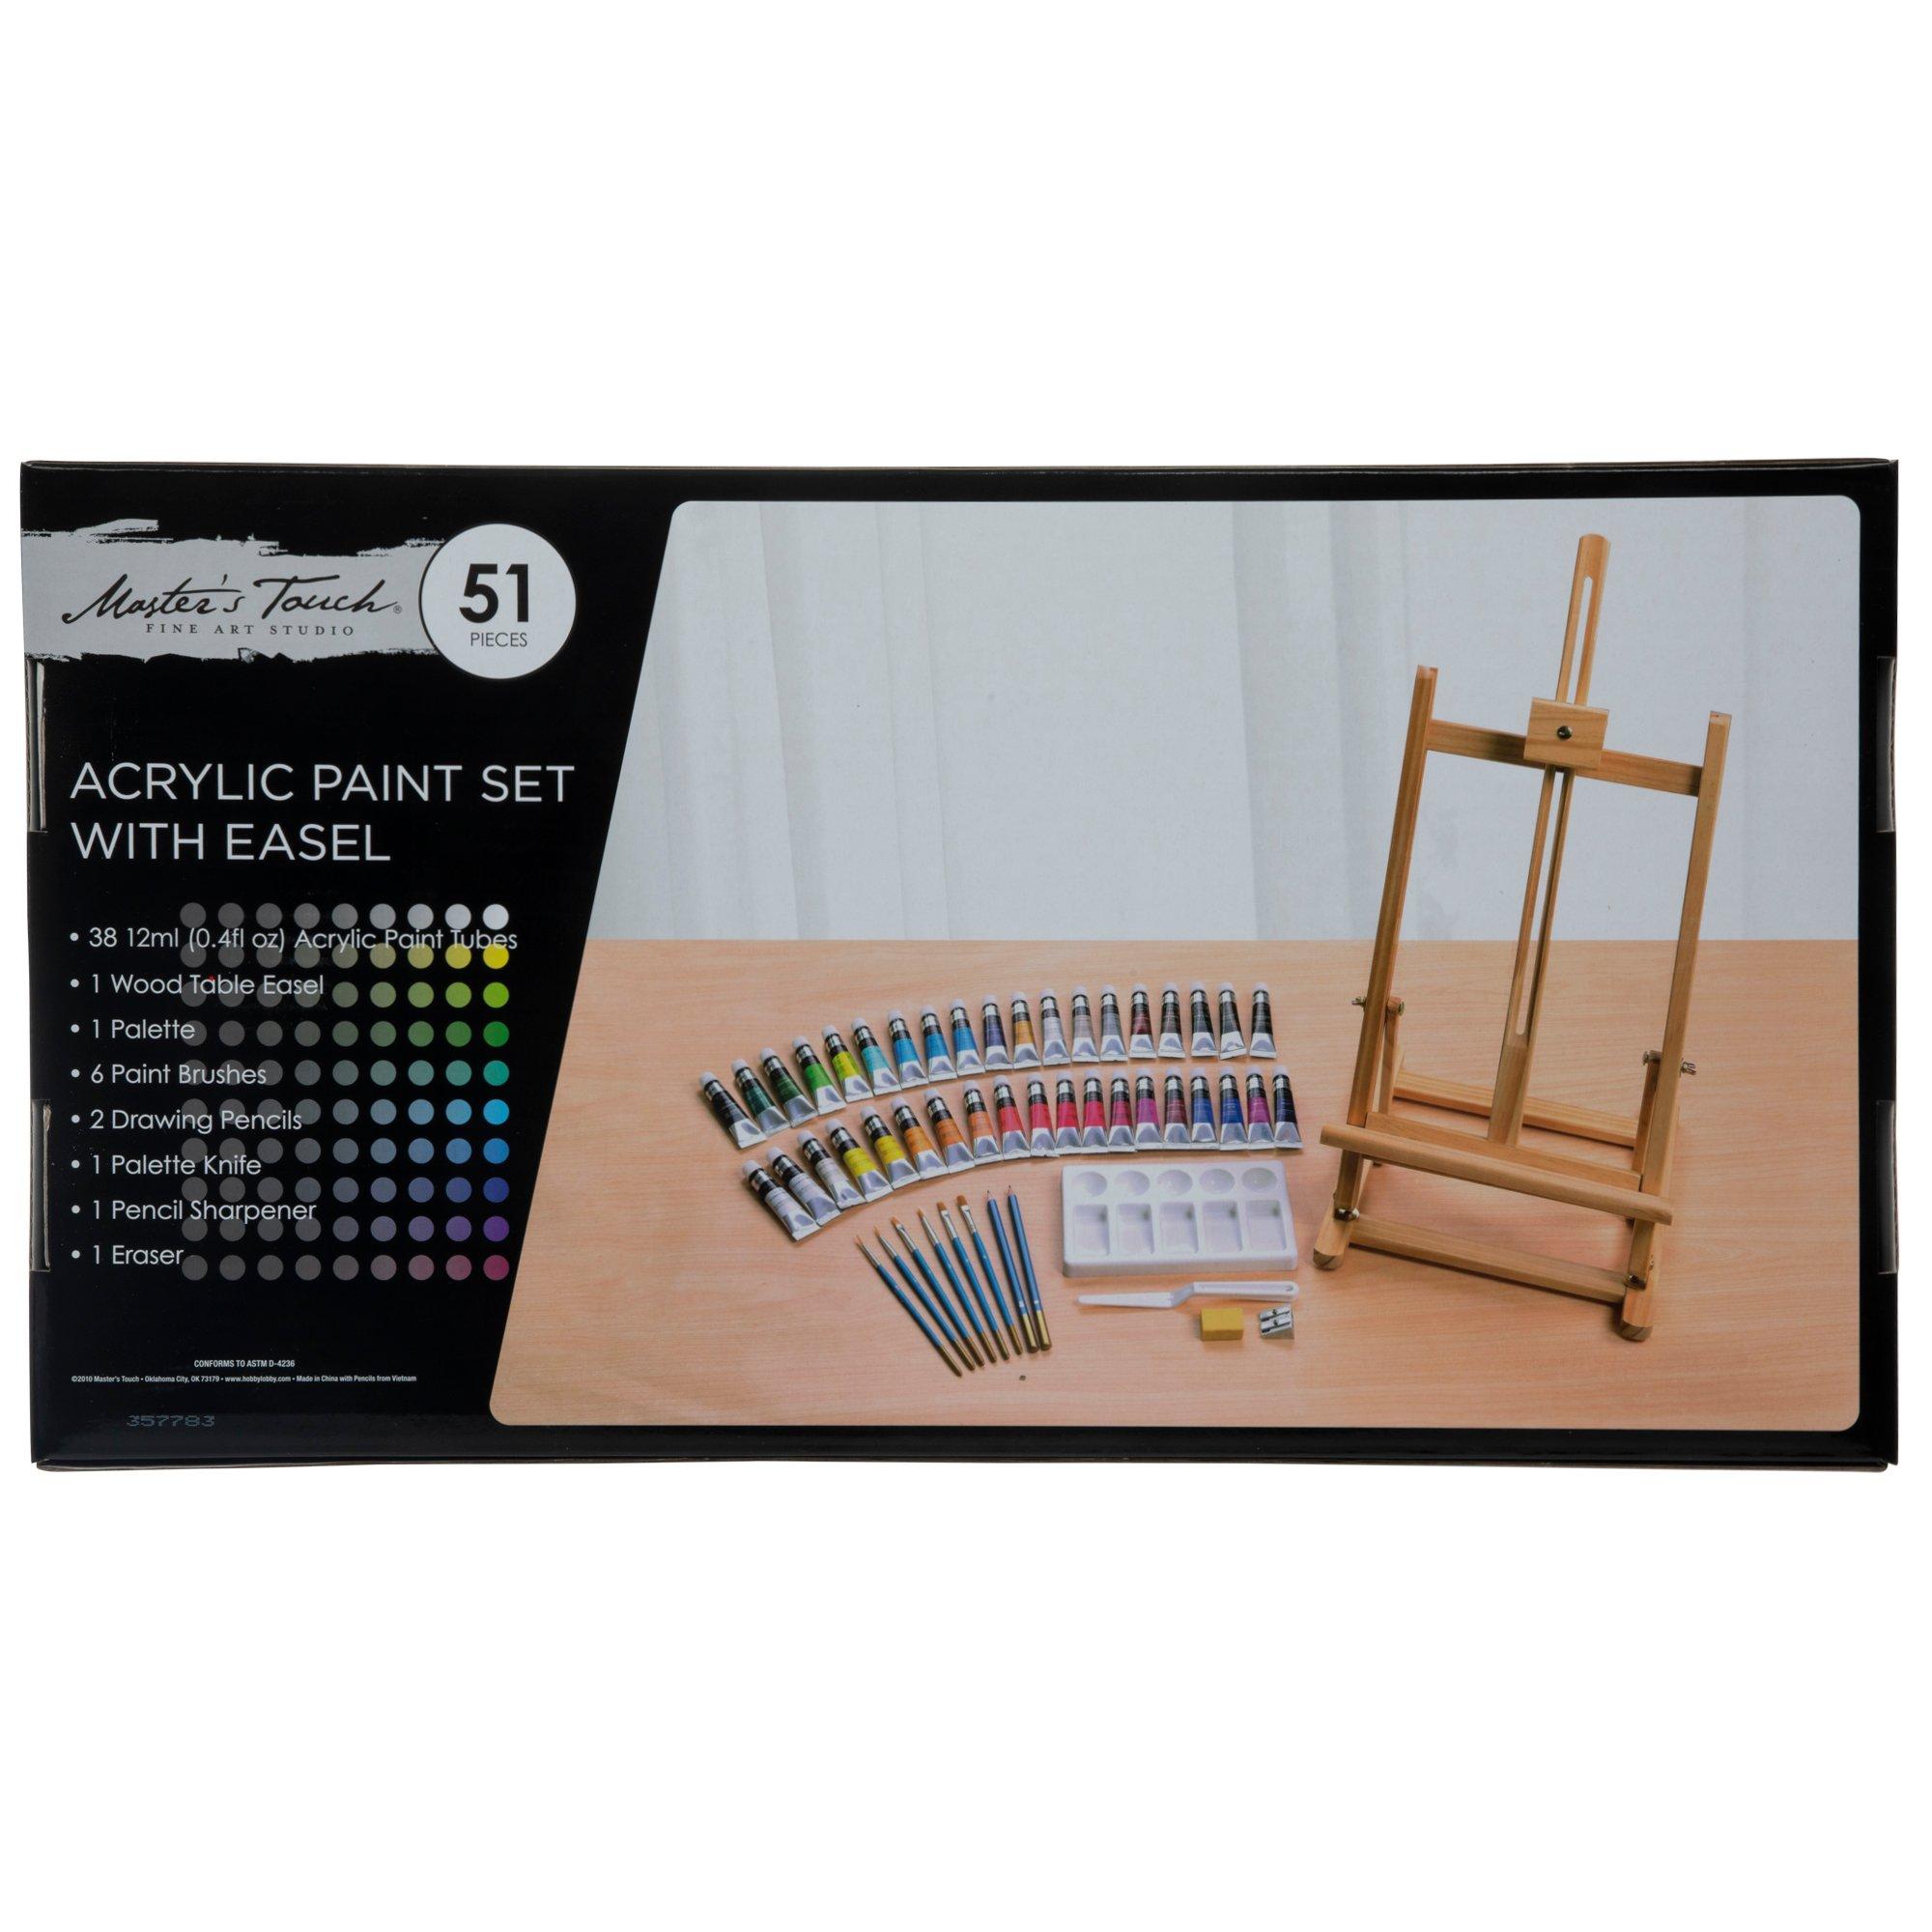 Acrylic Paint & Easel - 51 Piece Set, Hobby Lobby